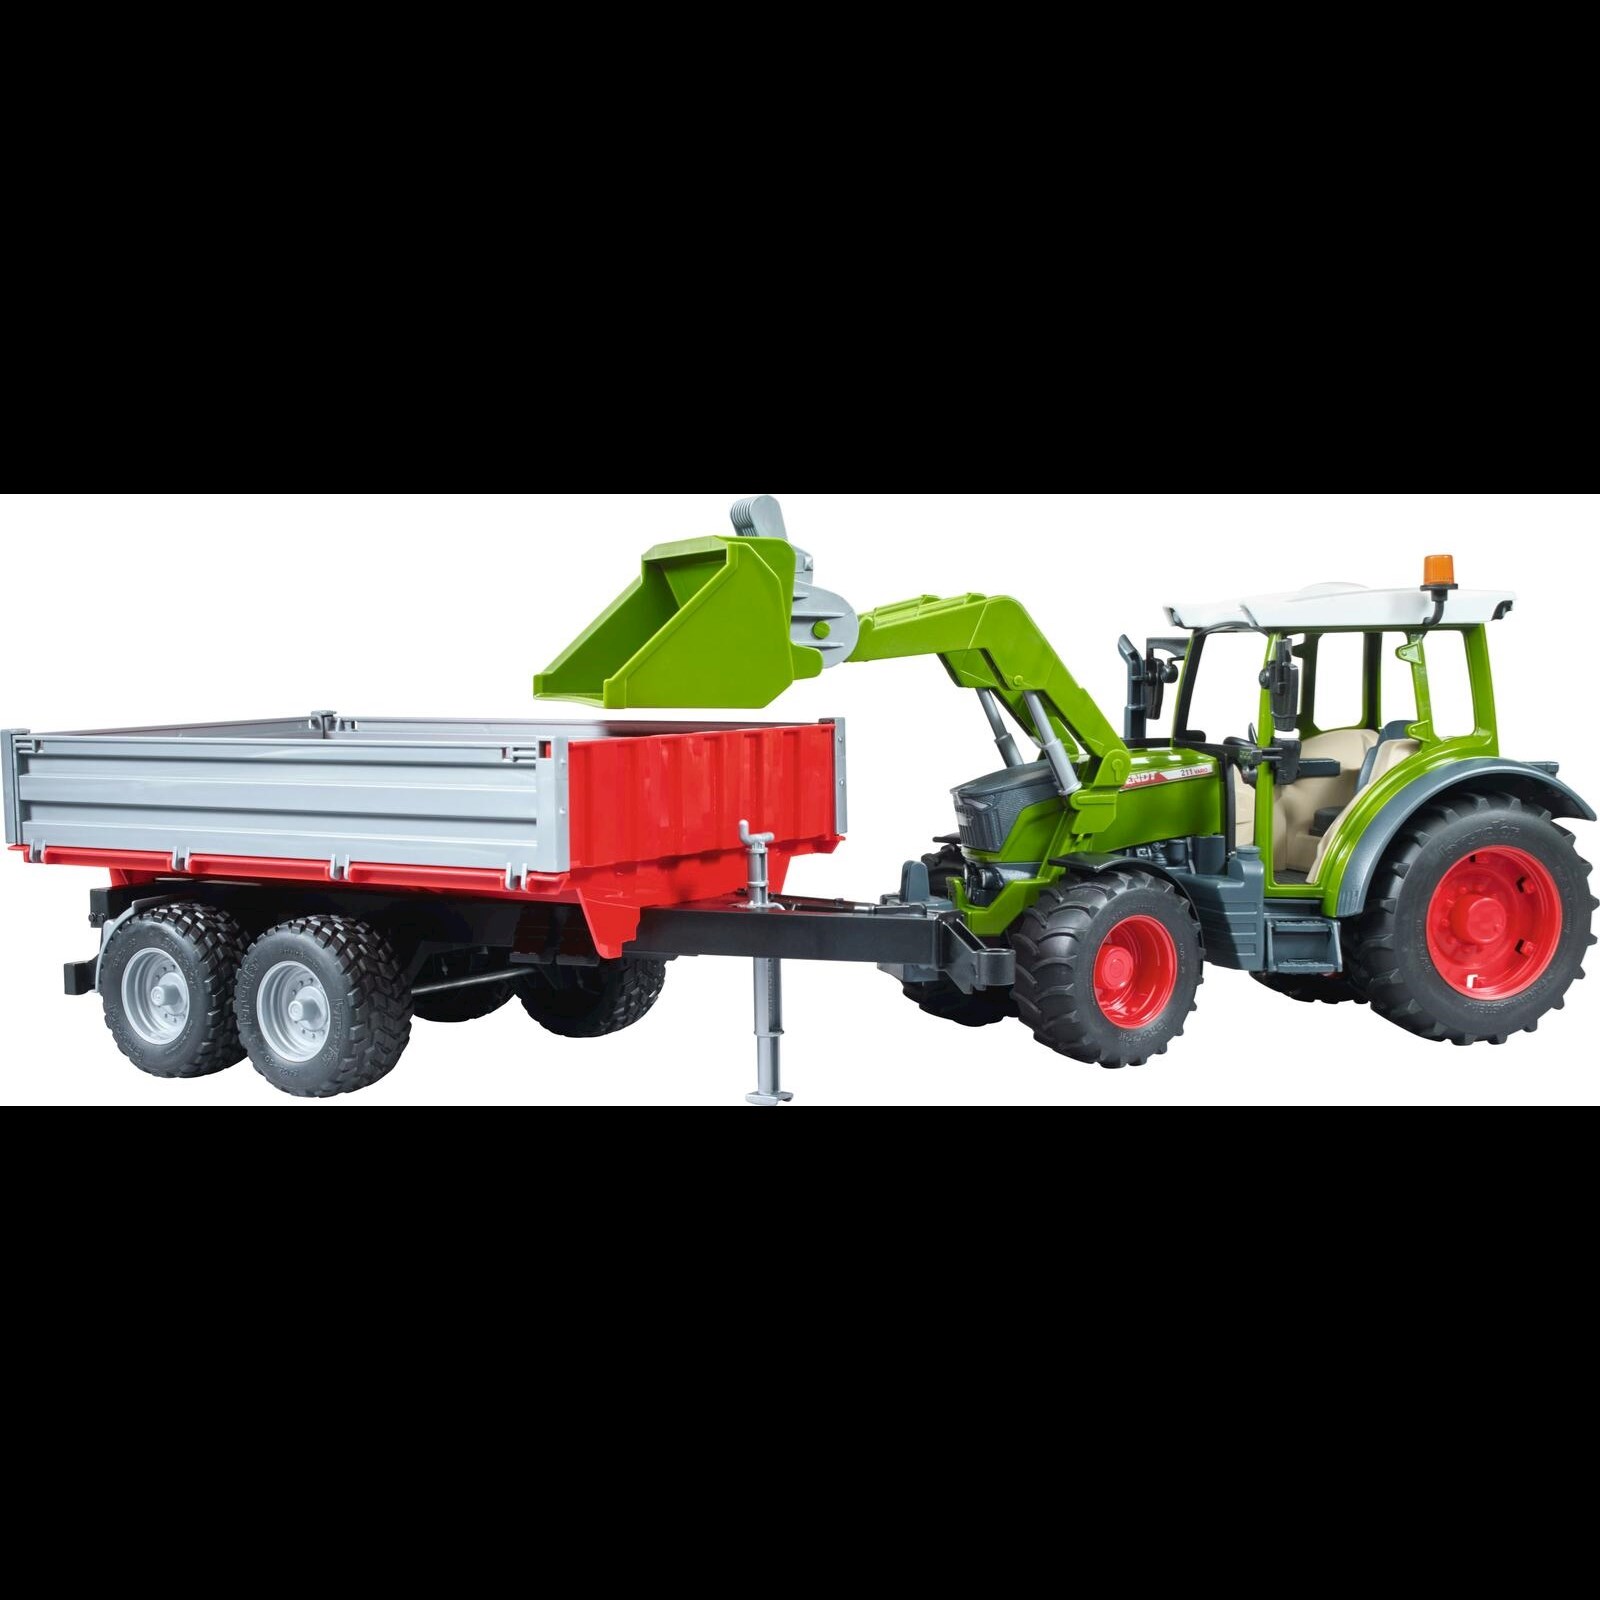 https://www.landi.ch/ImageOriginal/Img/product/096/101/96101_traktor-mit-anhaenger-und-frontschaufel_96101_0.jpg?width=1600&height=1600&mode=pad&bgcolor=fff